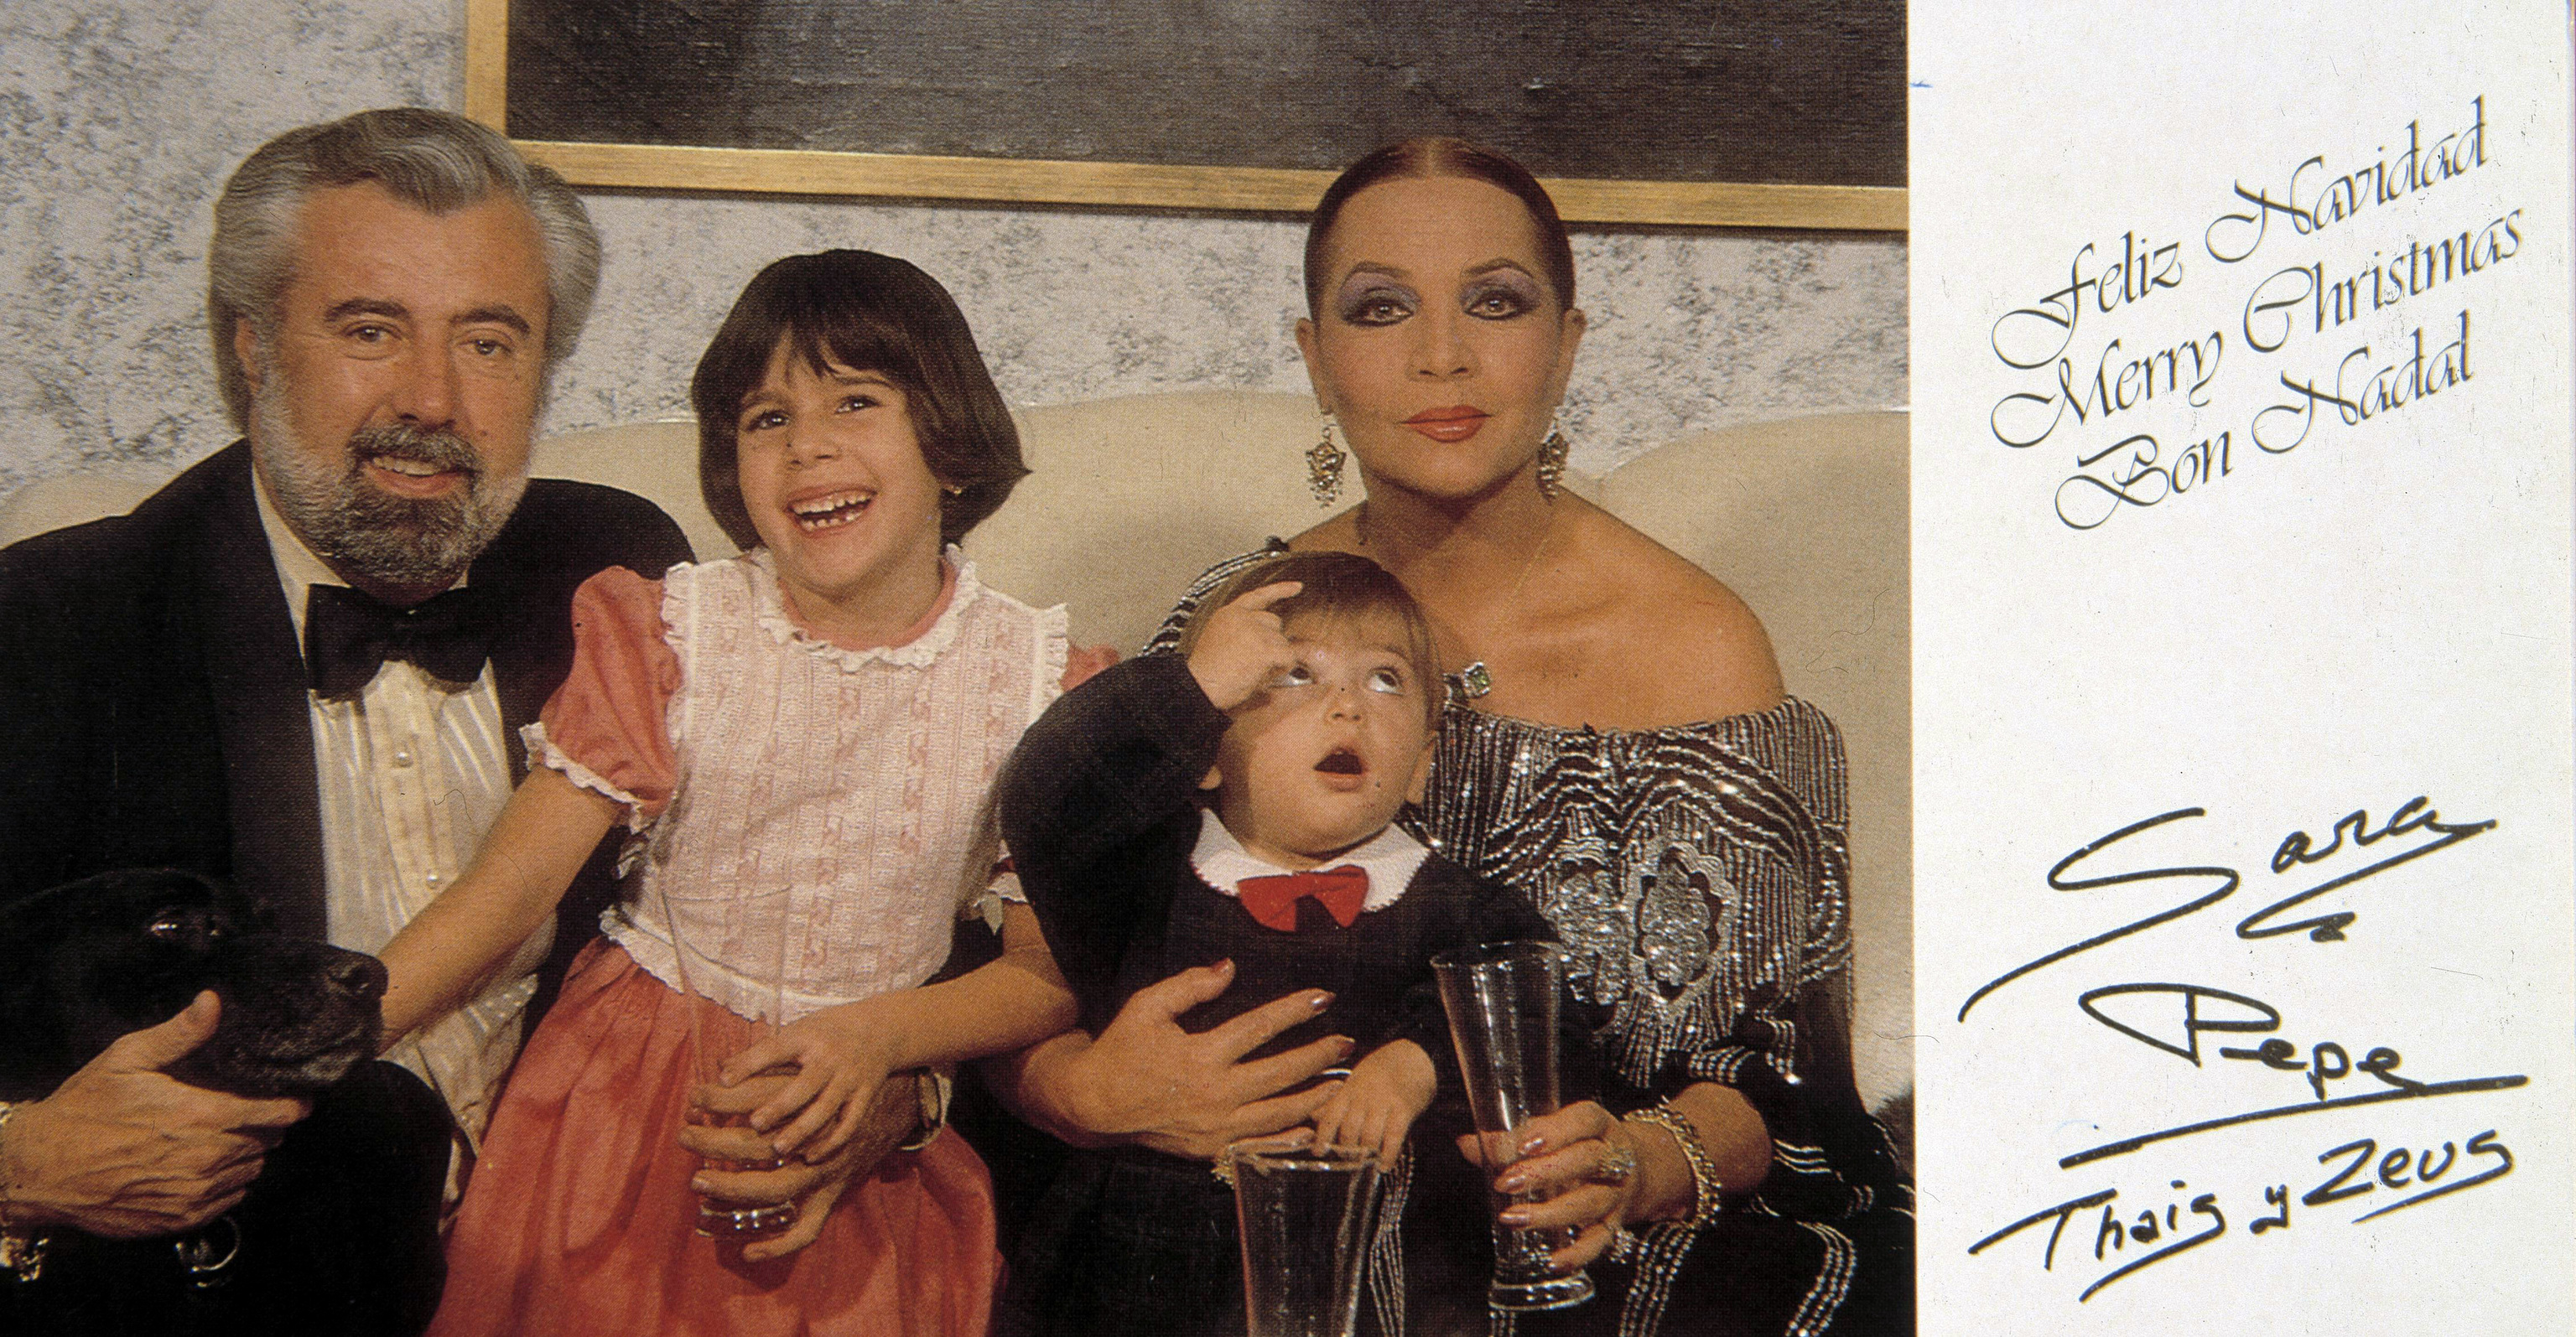 Sara Montiel, Pepe Tous y sus hijos, Thais y Zeus.